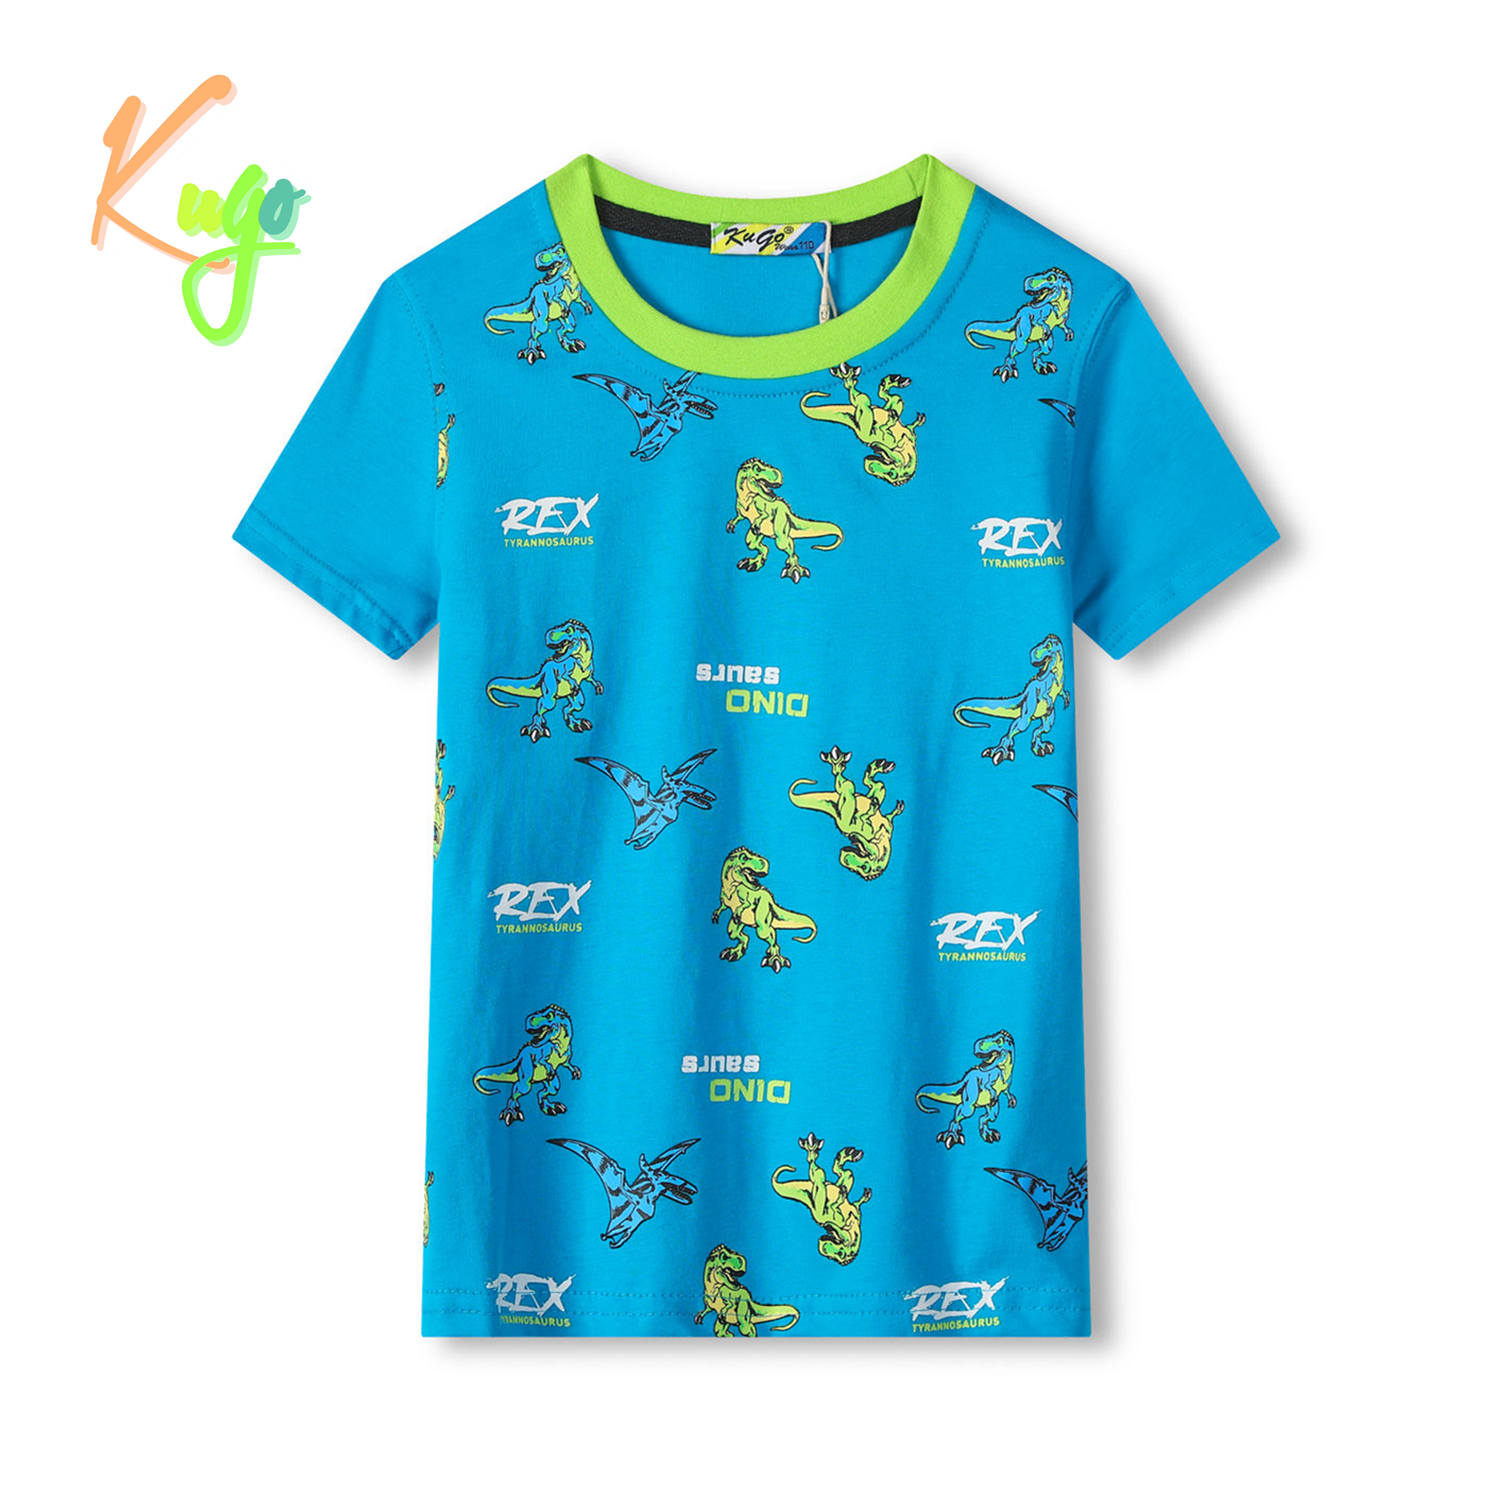 Chlapecké tričko - KUGO TM8574C, tyrkysová Barva: Tyrkysová, Velikost: 110